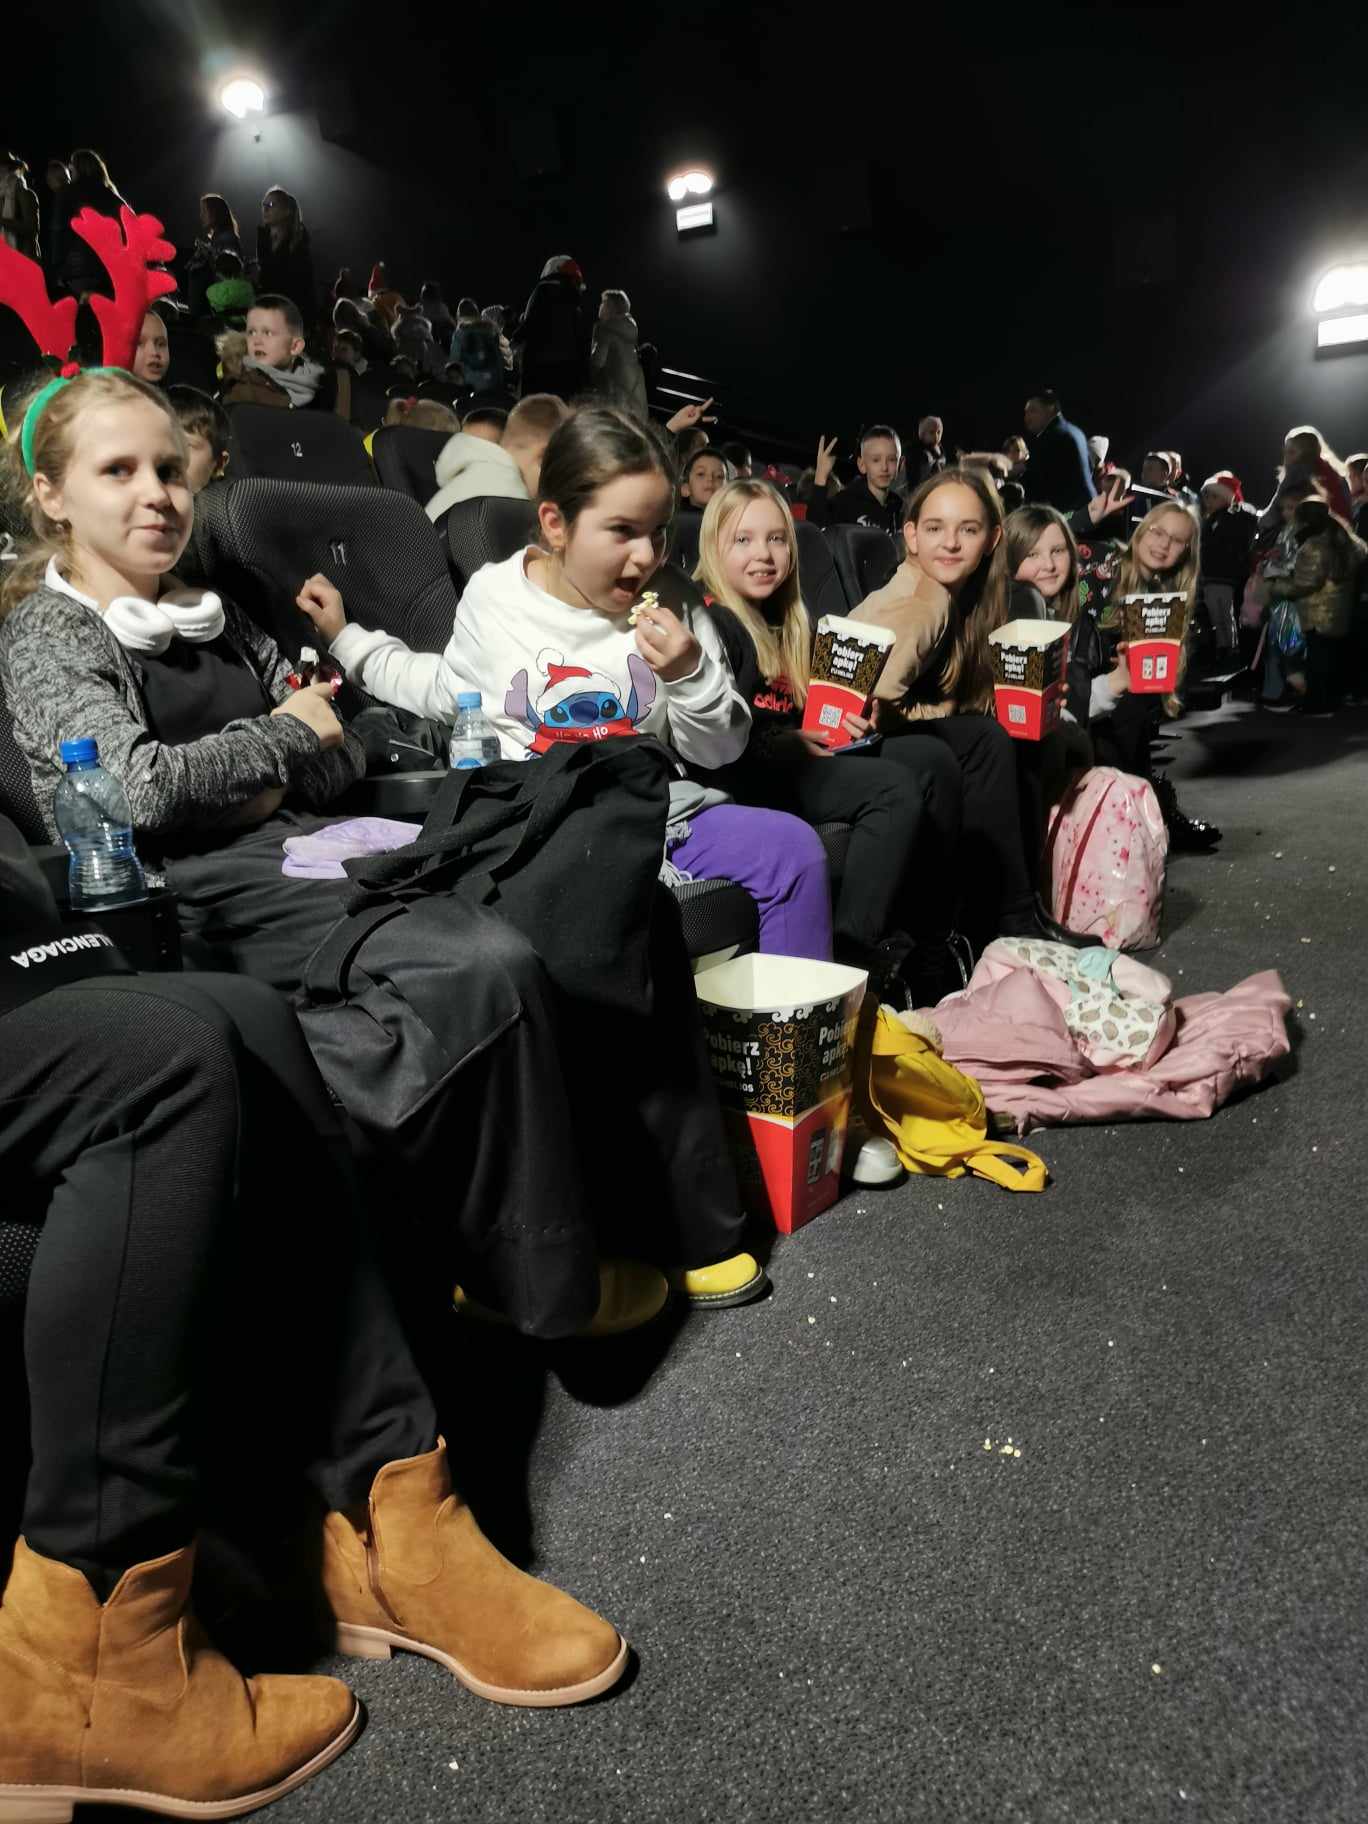 Na zdjęciu widać 6 dziewczynek, które siedzą w pierwszym rzędzie w sali kinowej. W tle widać pozostałych widzów kina.